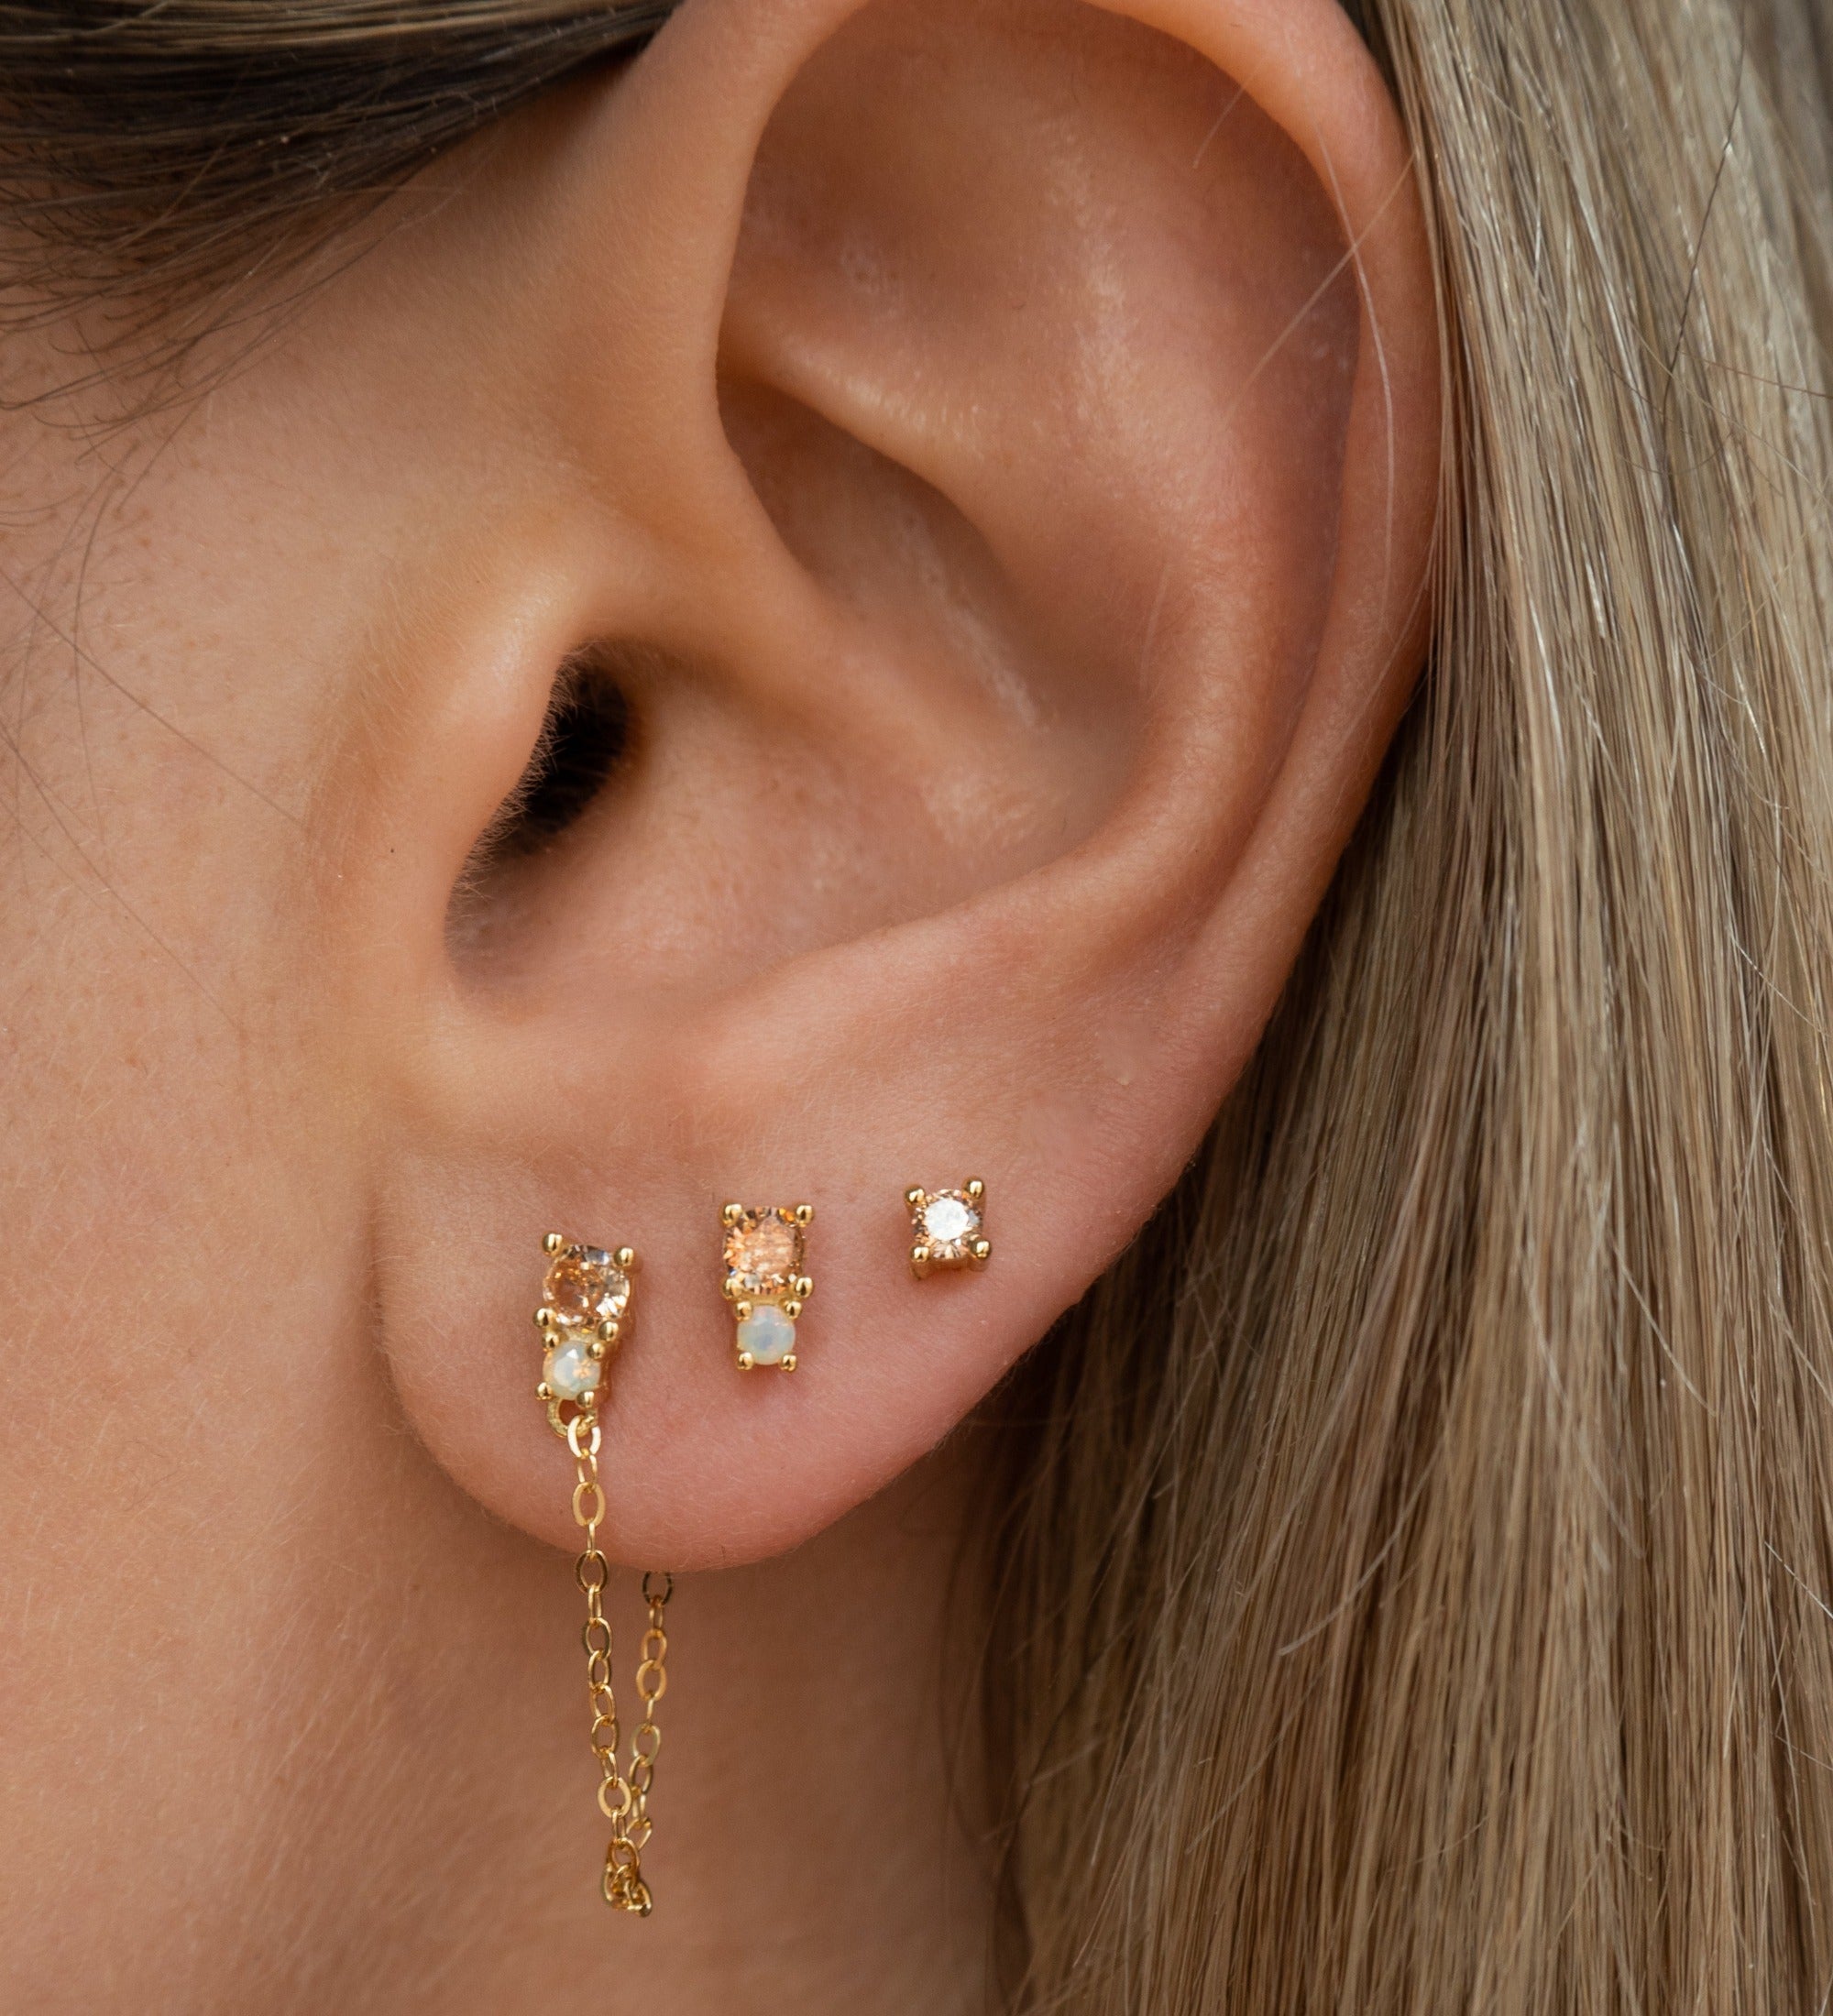 Double Earring Studs Ear Piercing Helix Cartilage Ear Jewelry 16G – Impuria Ear  Piercing Jewelry